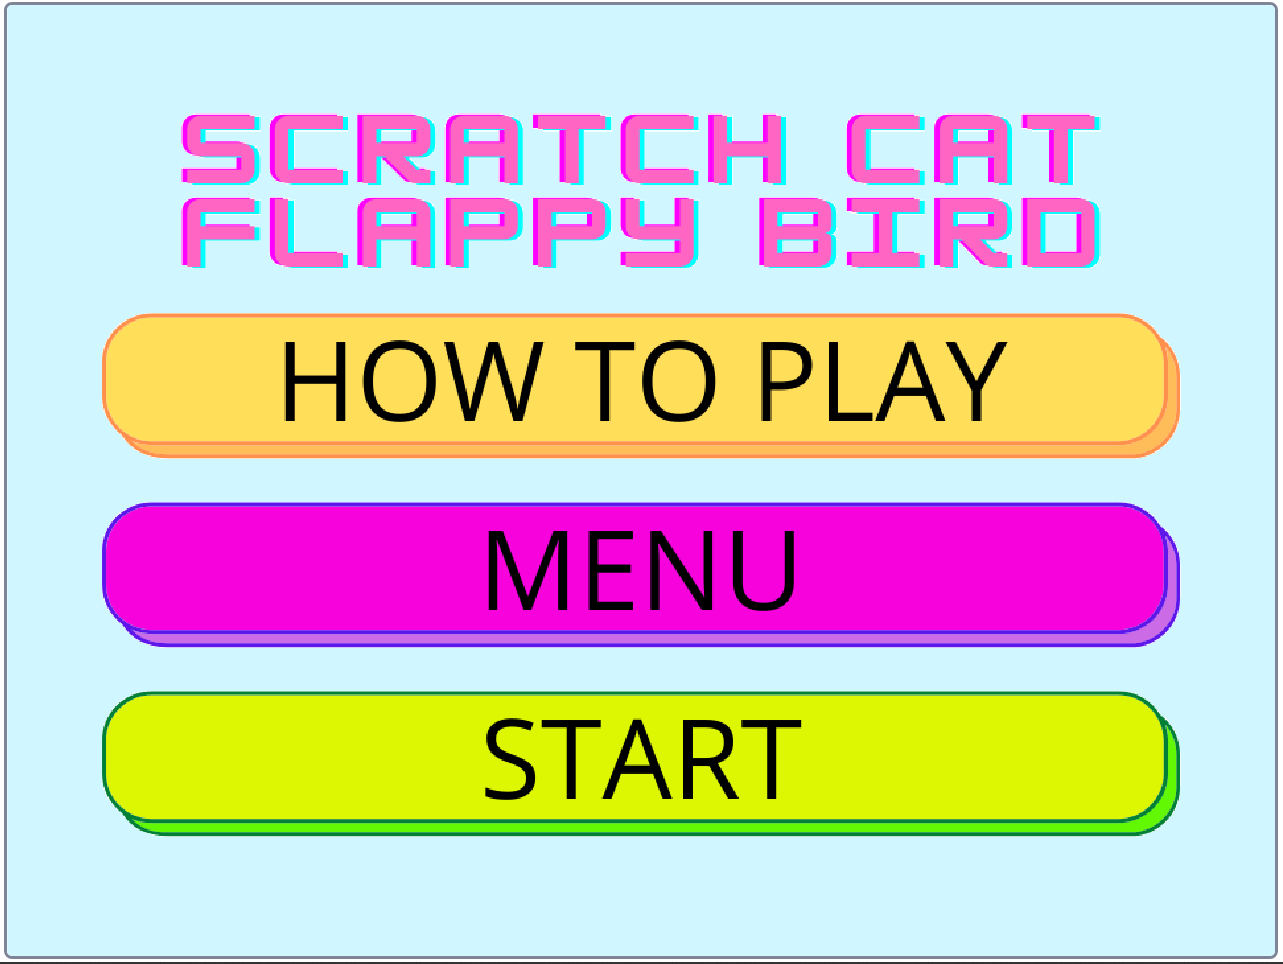  https://cloud-9jio2yoir.vercel.app/1scratch_cat_flappy_bird.png